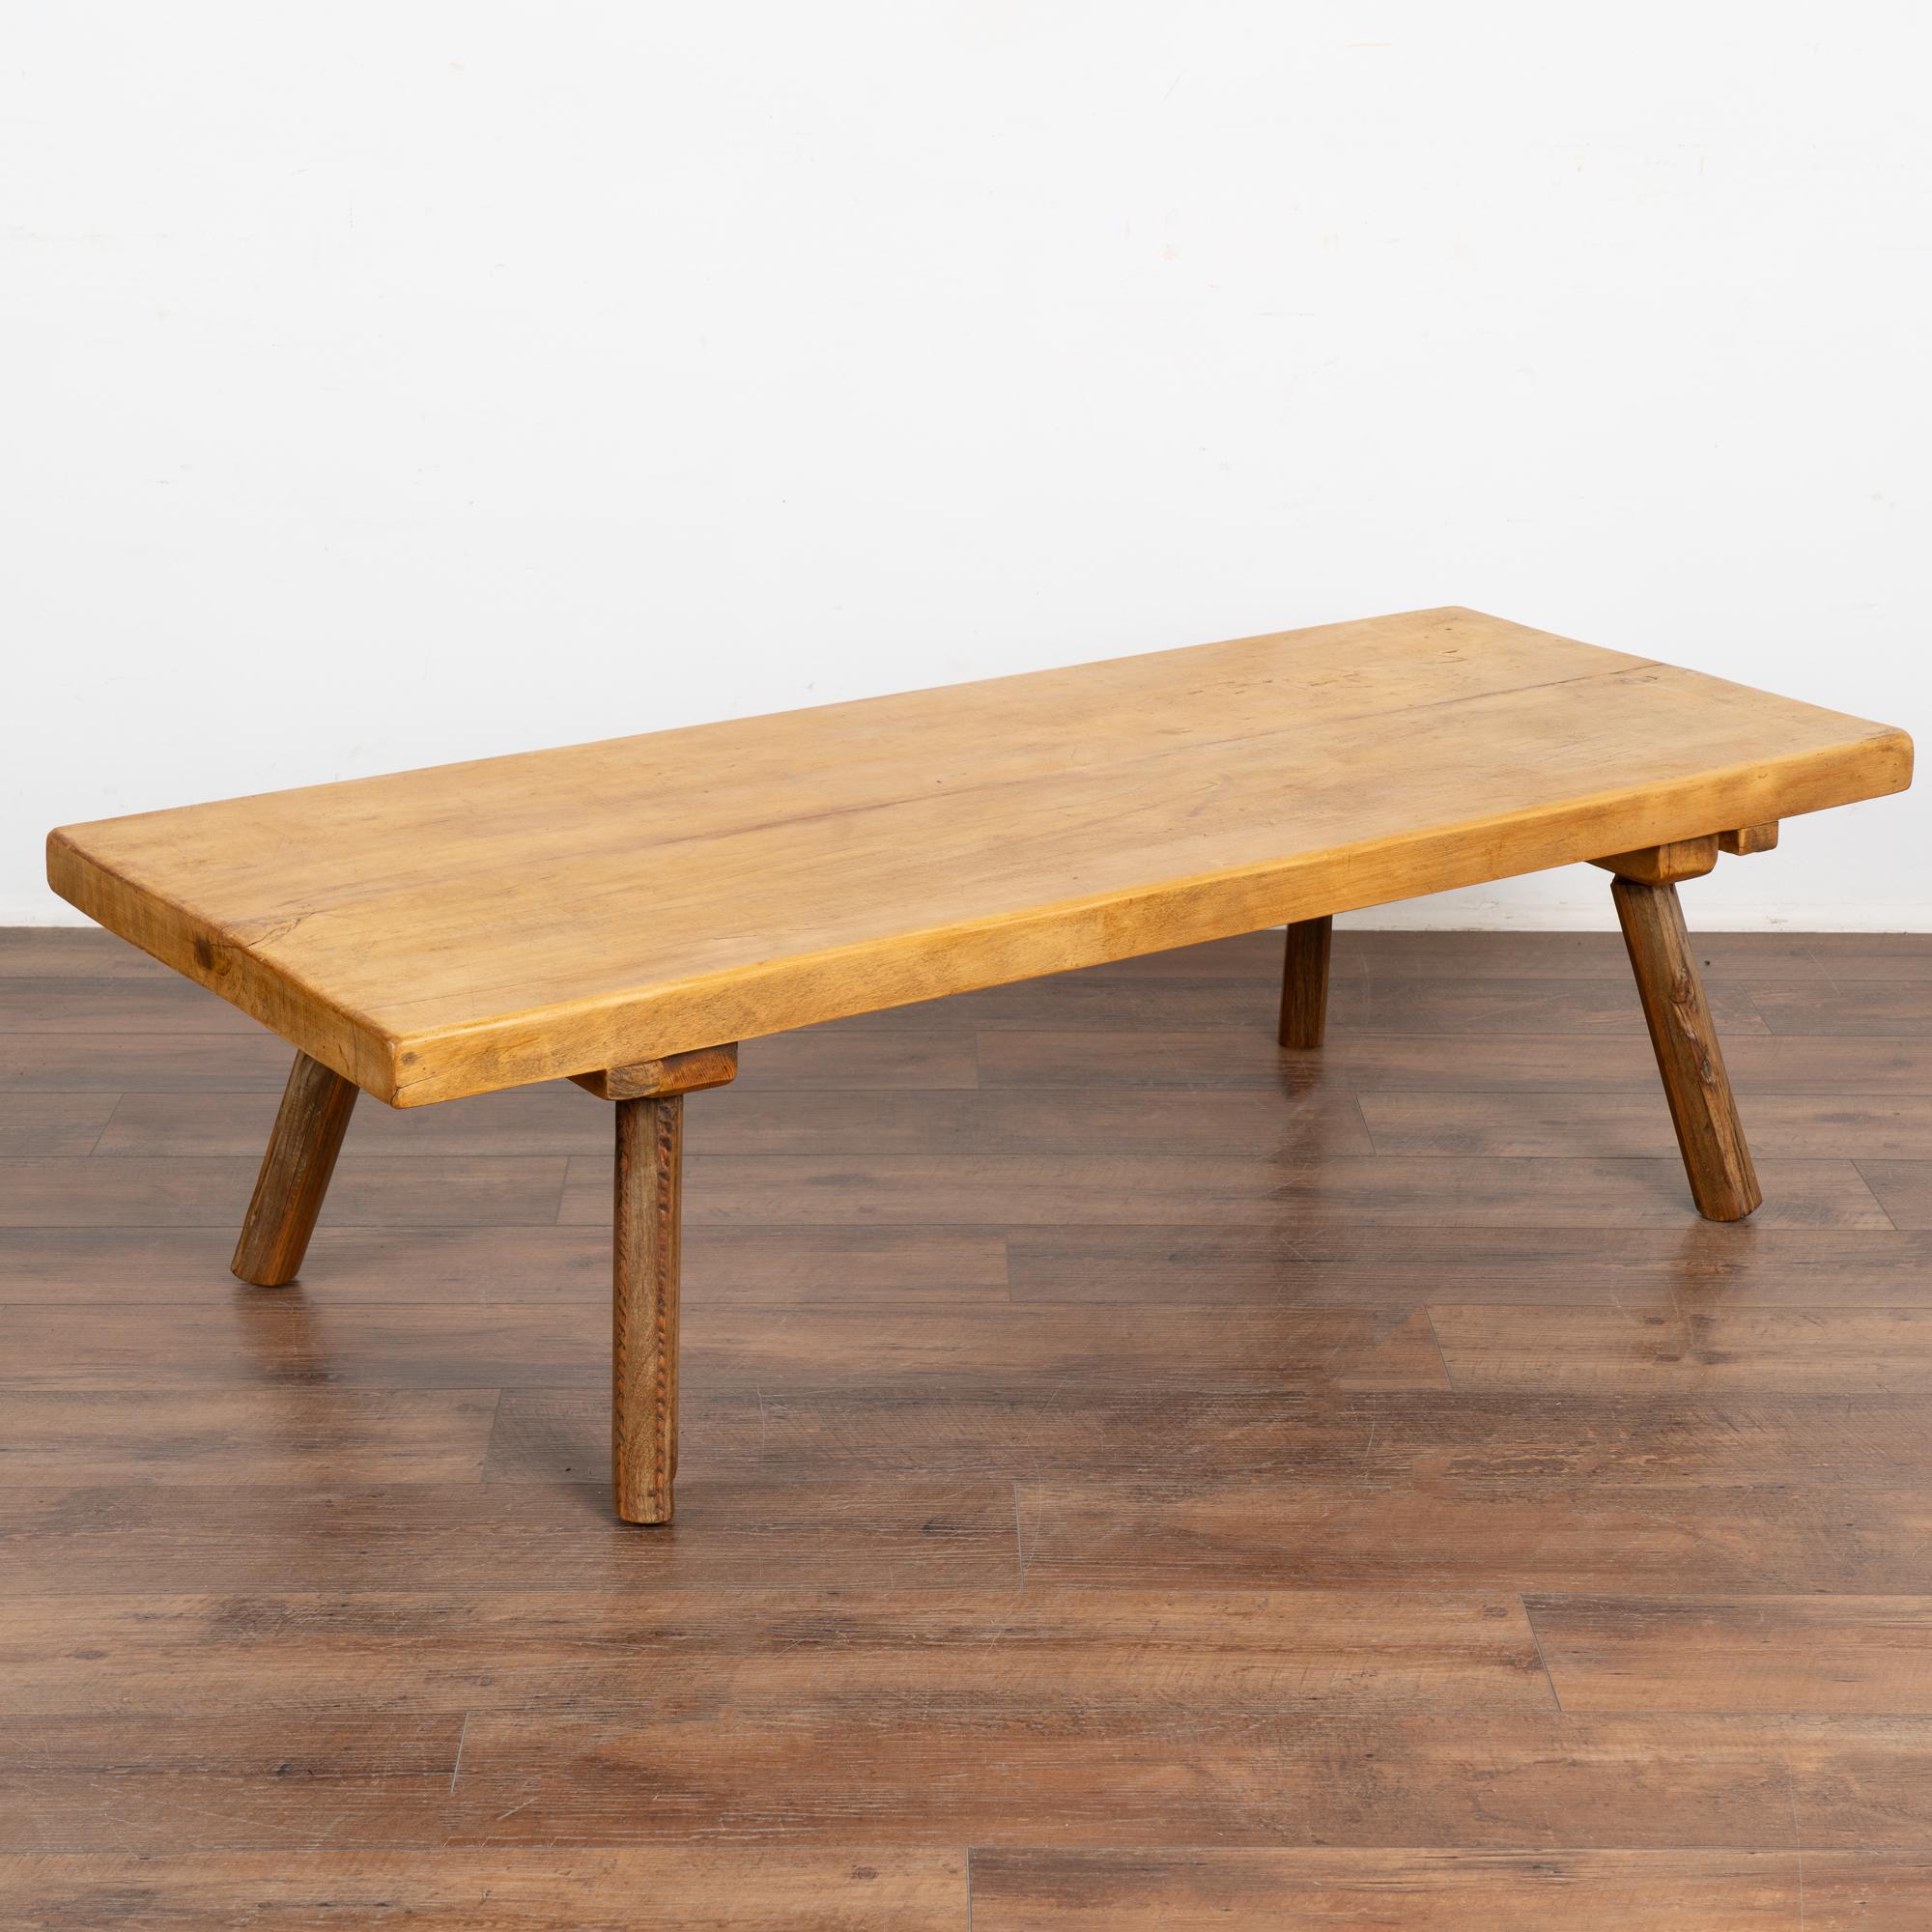 L'attrait de cette table basse rustique provient de l'épais plateau de bois qui servait à l'origine de table de travail. 
Les pieds ronds sont d'une couleur contrastée plus foncée que le plateau.
Notez les éraflures, les entailles et même les